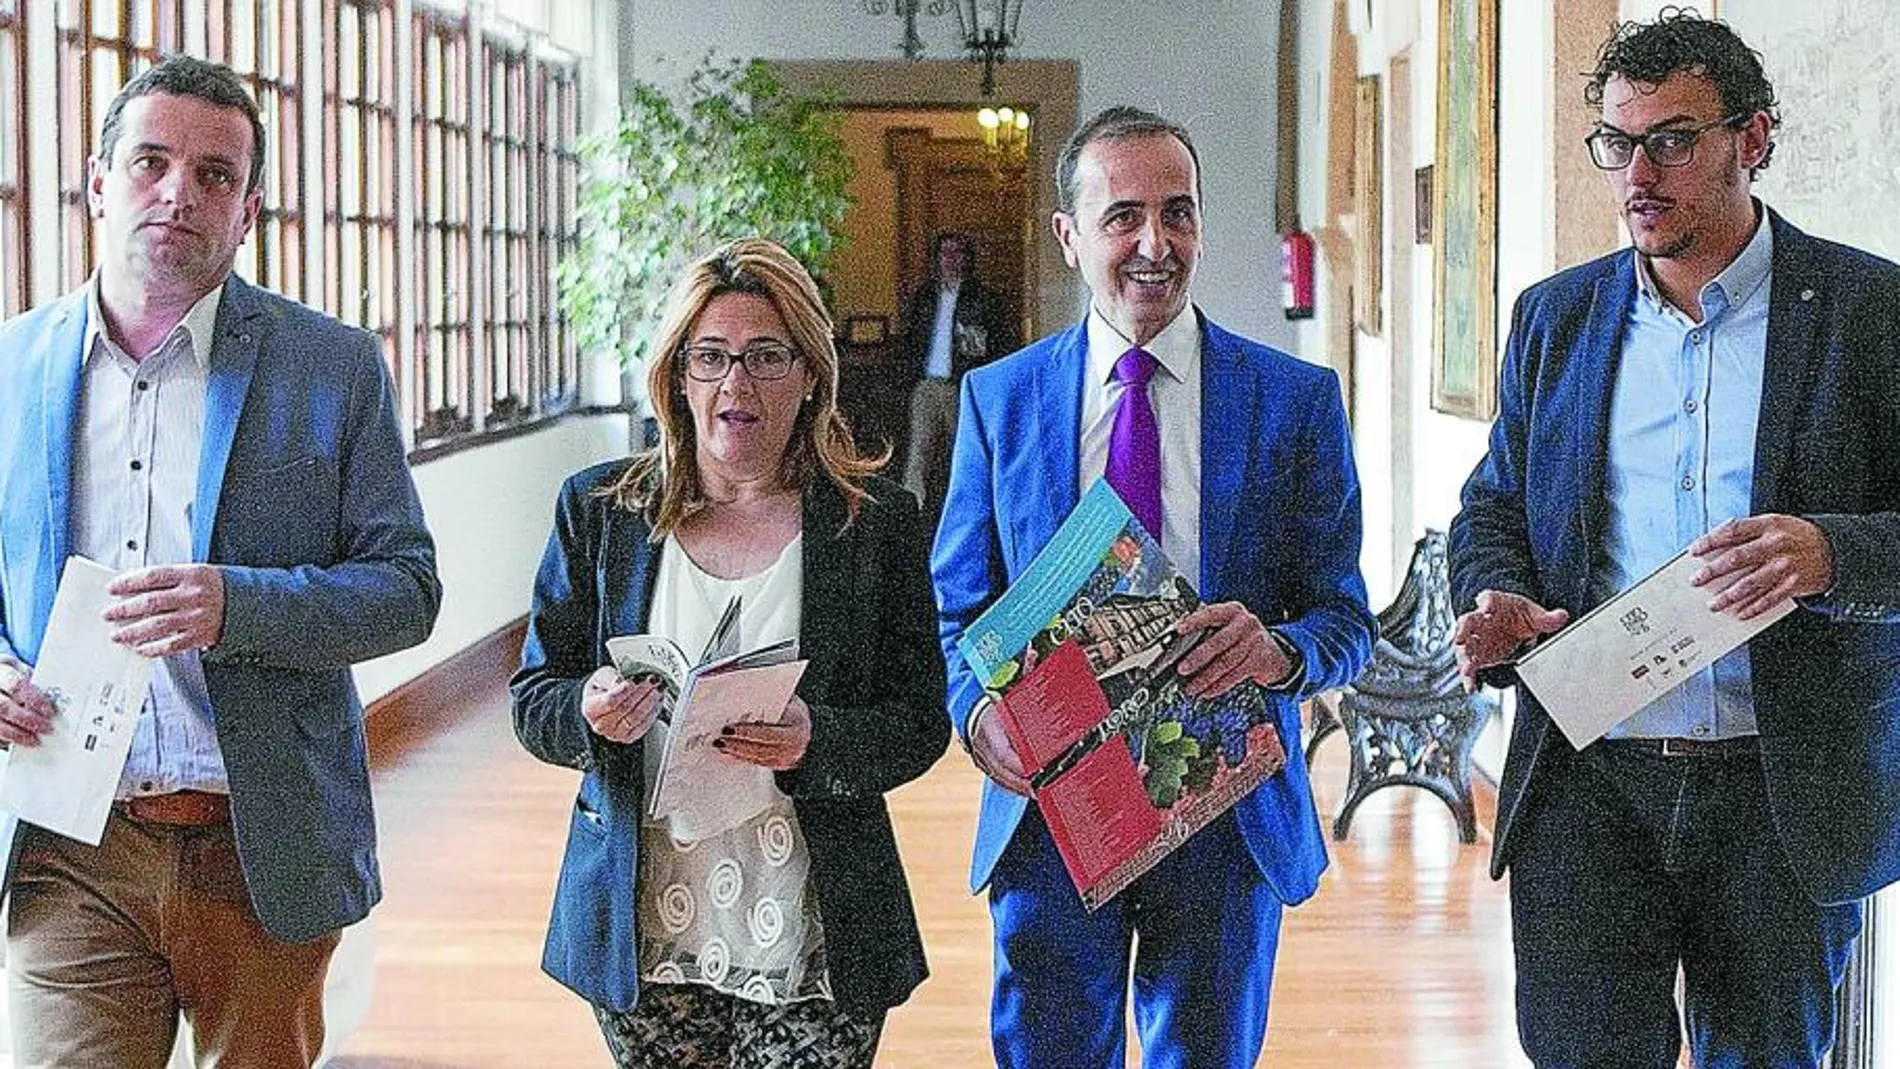 La presidenta de la Diputación de Zamora, Mayte Martín, presenta «Eno Toro», junto a José Luis Prieto; el alcalde del Toro, Tomás del Bién, y Amancio Moyano